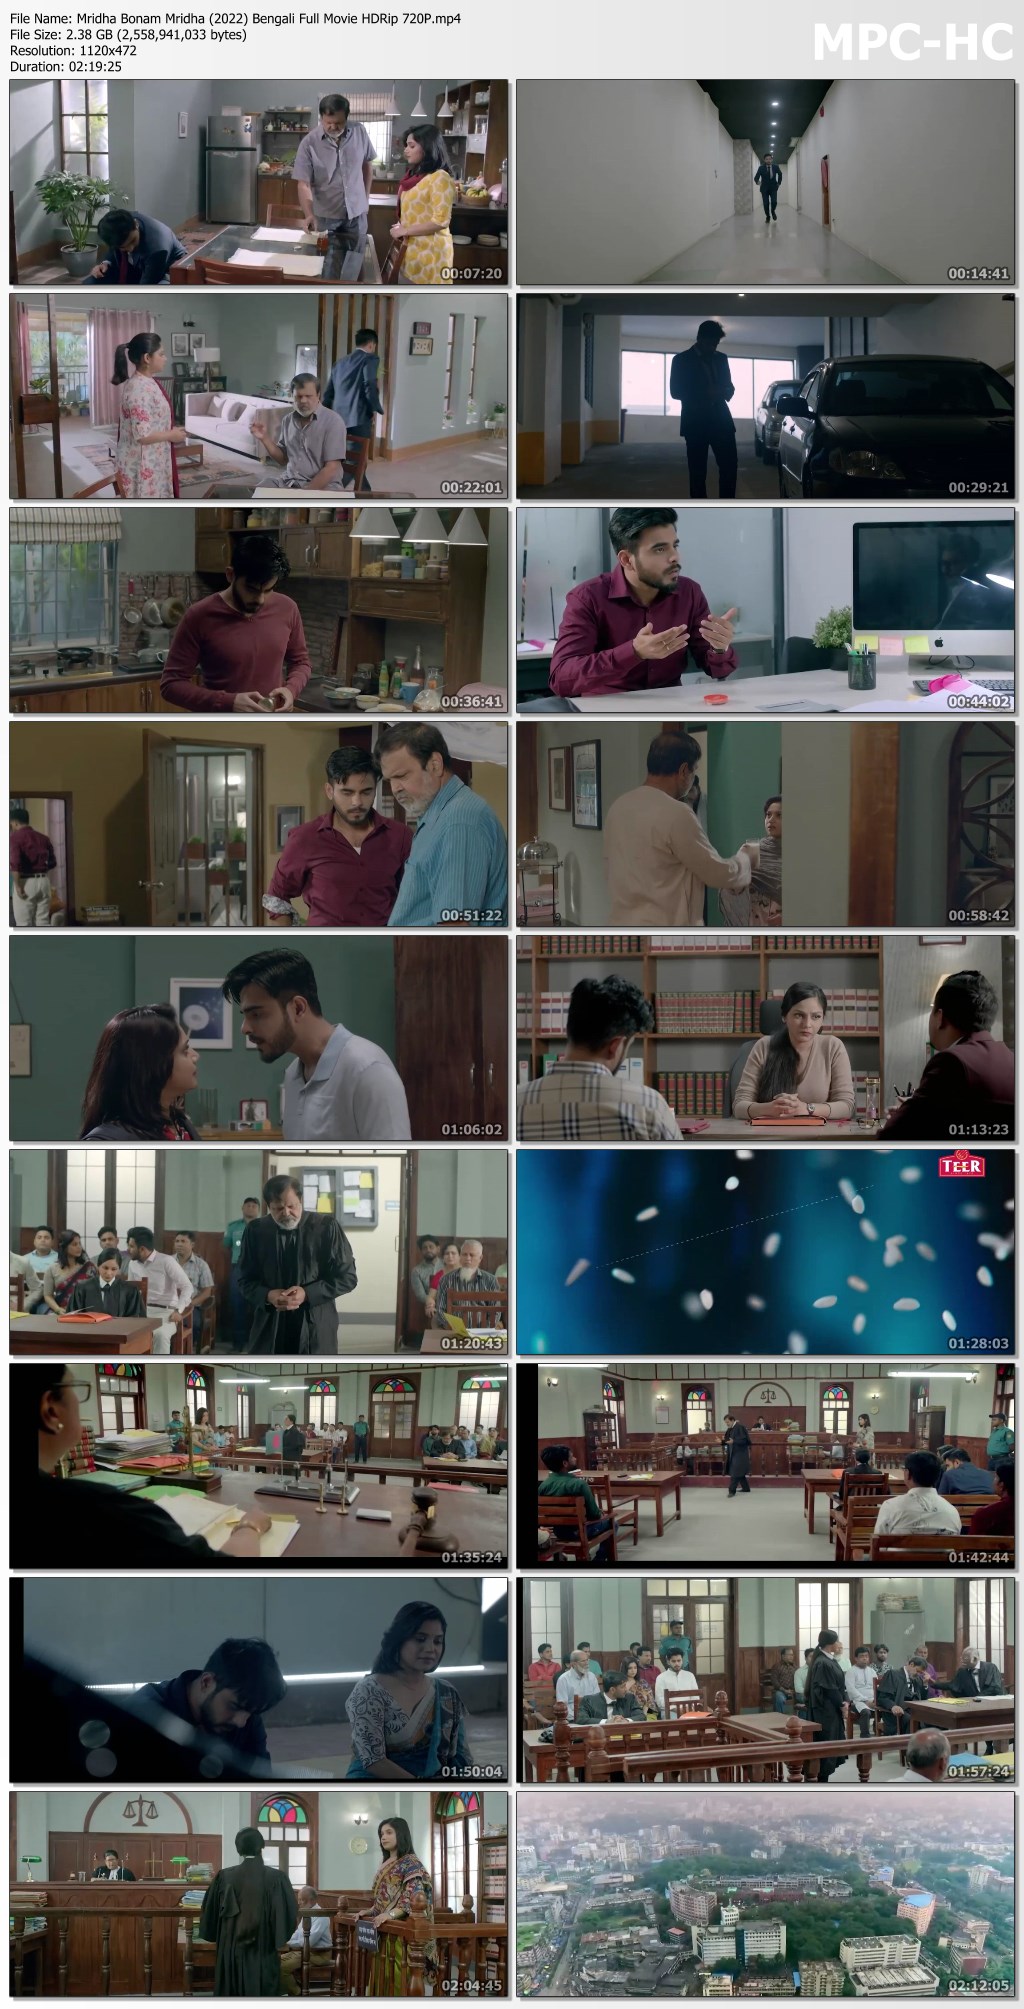 Mridha-Bonam-Mridha-2022-Bengali-Full-Movie-HDRip-720P.mp4_thumbs.jpg